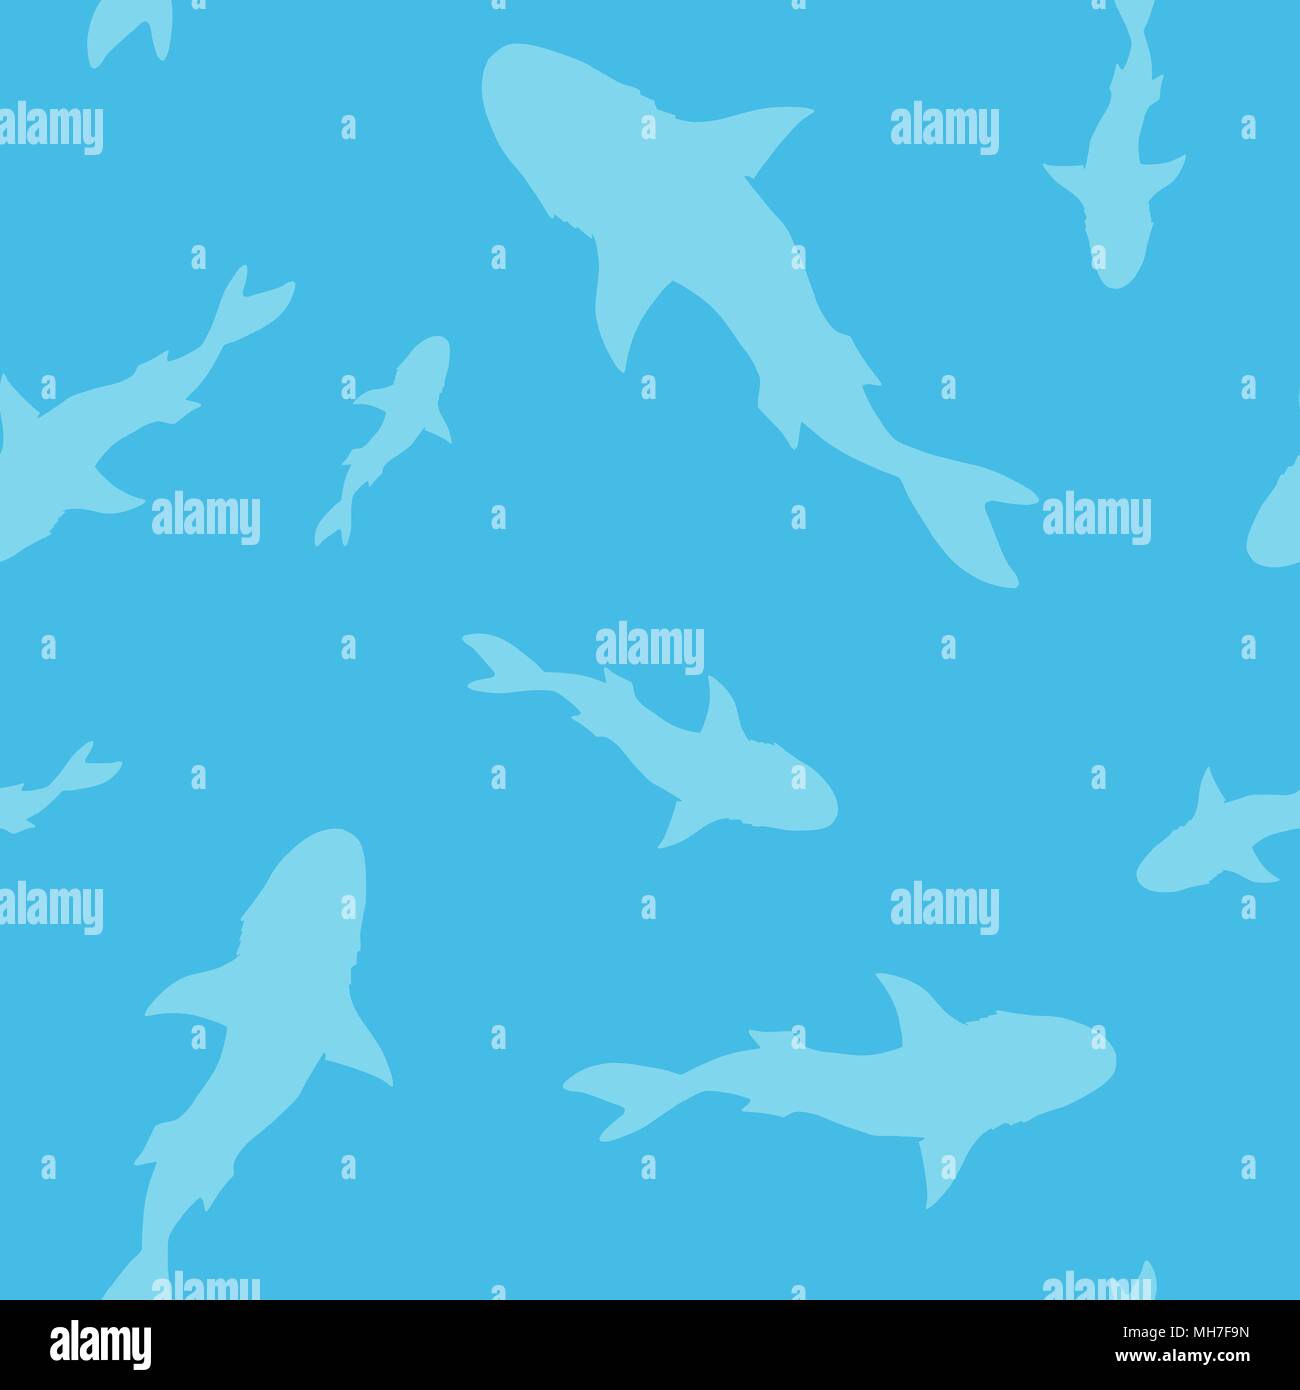 Profil de shark transparente vecteur silhouette poisson sur fond bleu Illustration de Vecteur